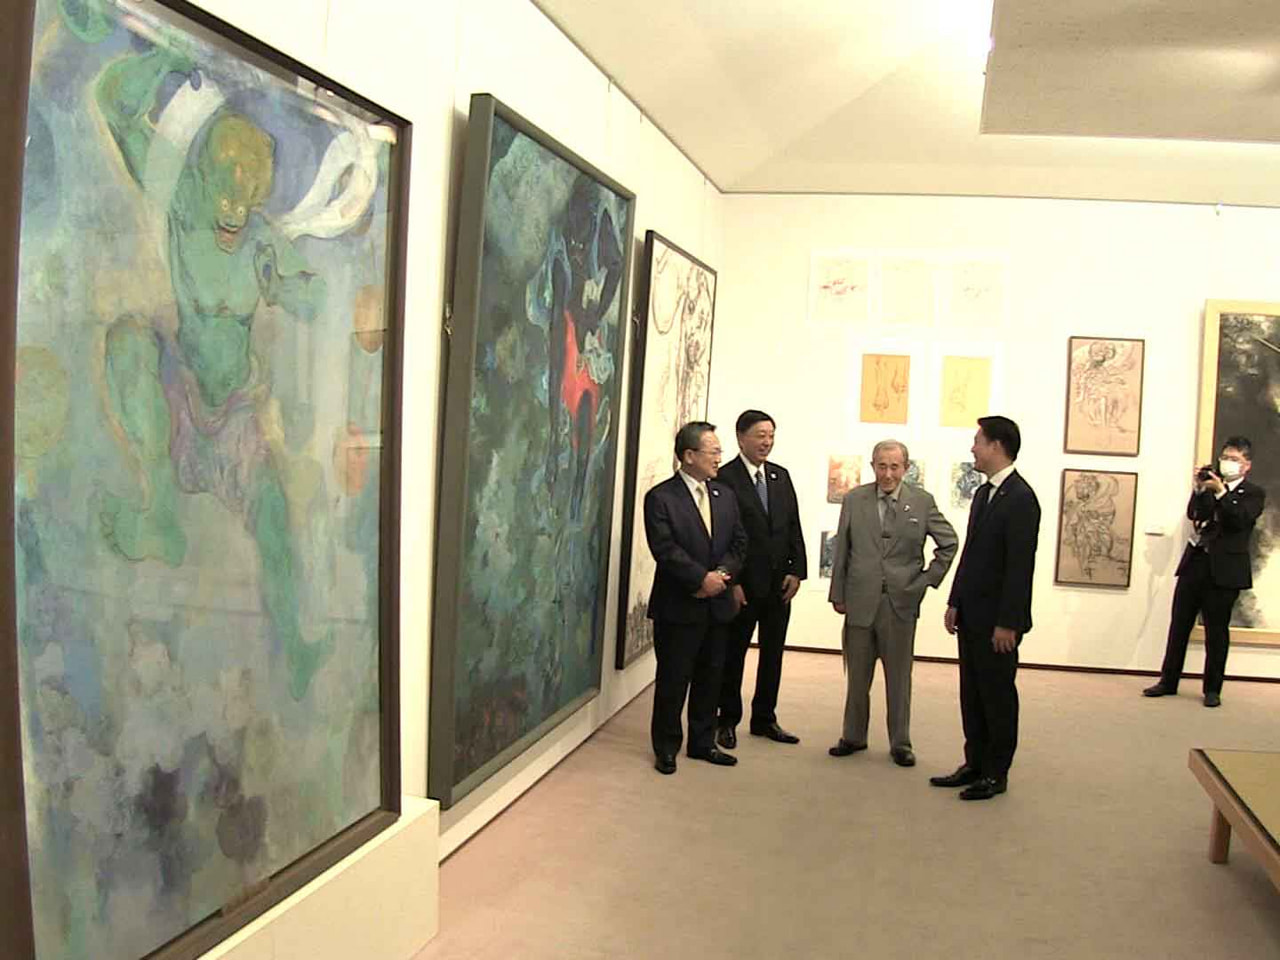 岐阜市出身の兄弟日本画家、加藤栄三と東一が描く「風神」と「雷神」をそろって展示し...